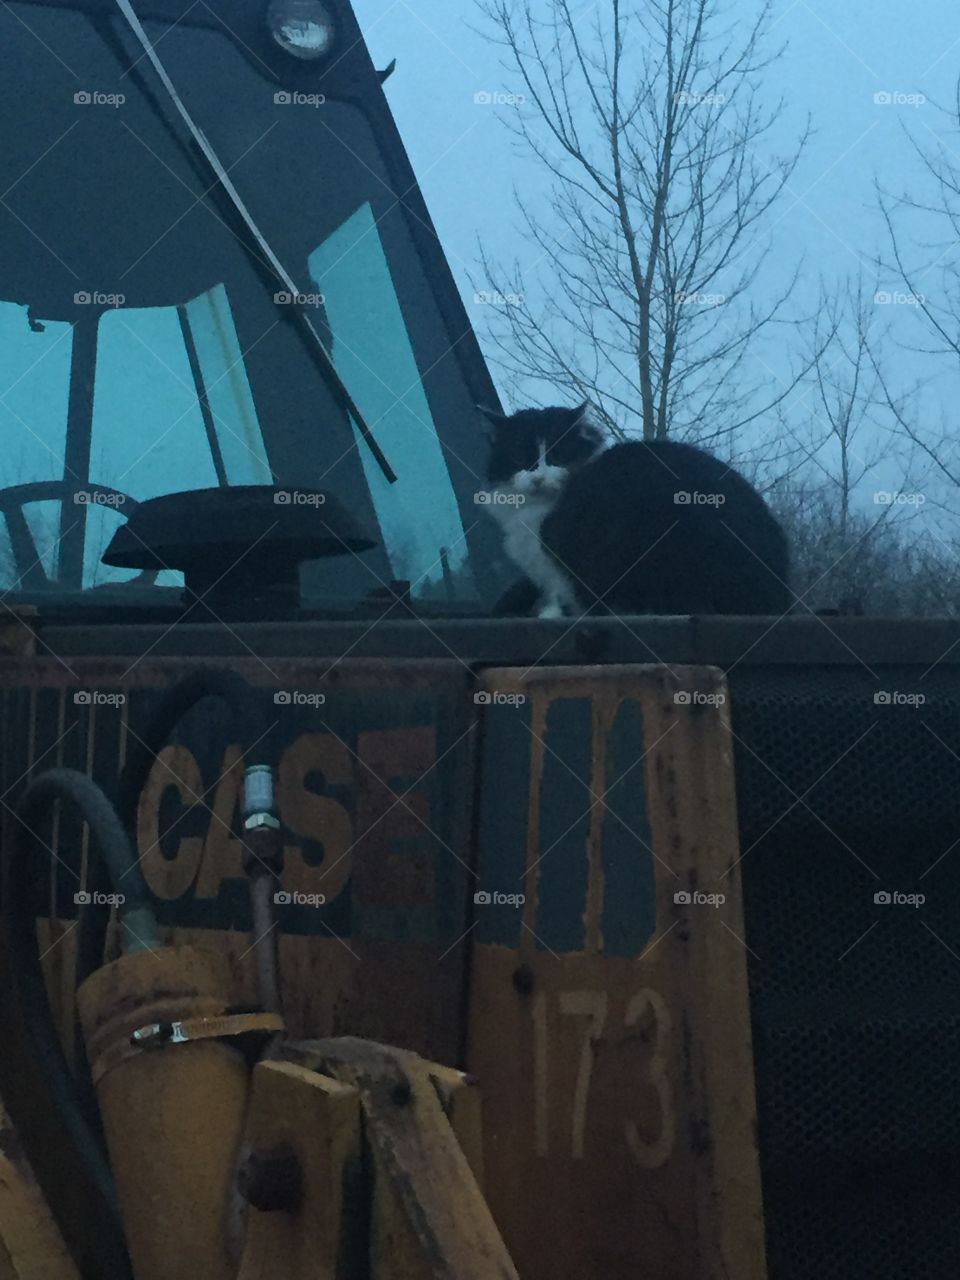 Cat on a backhoe